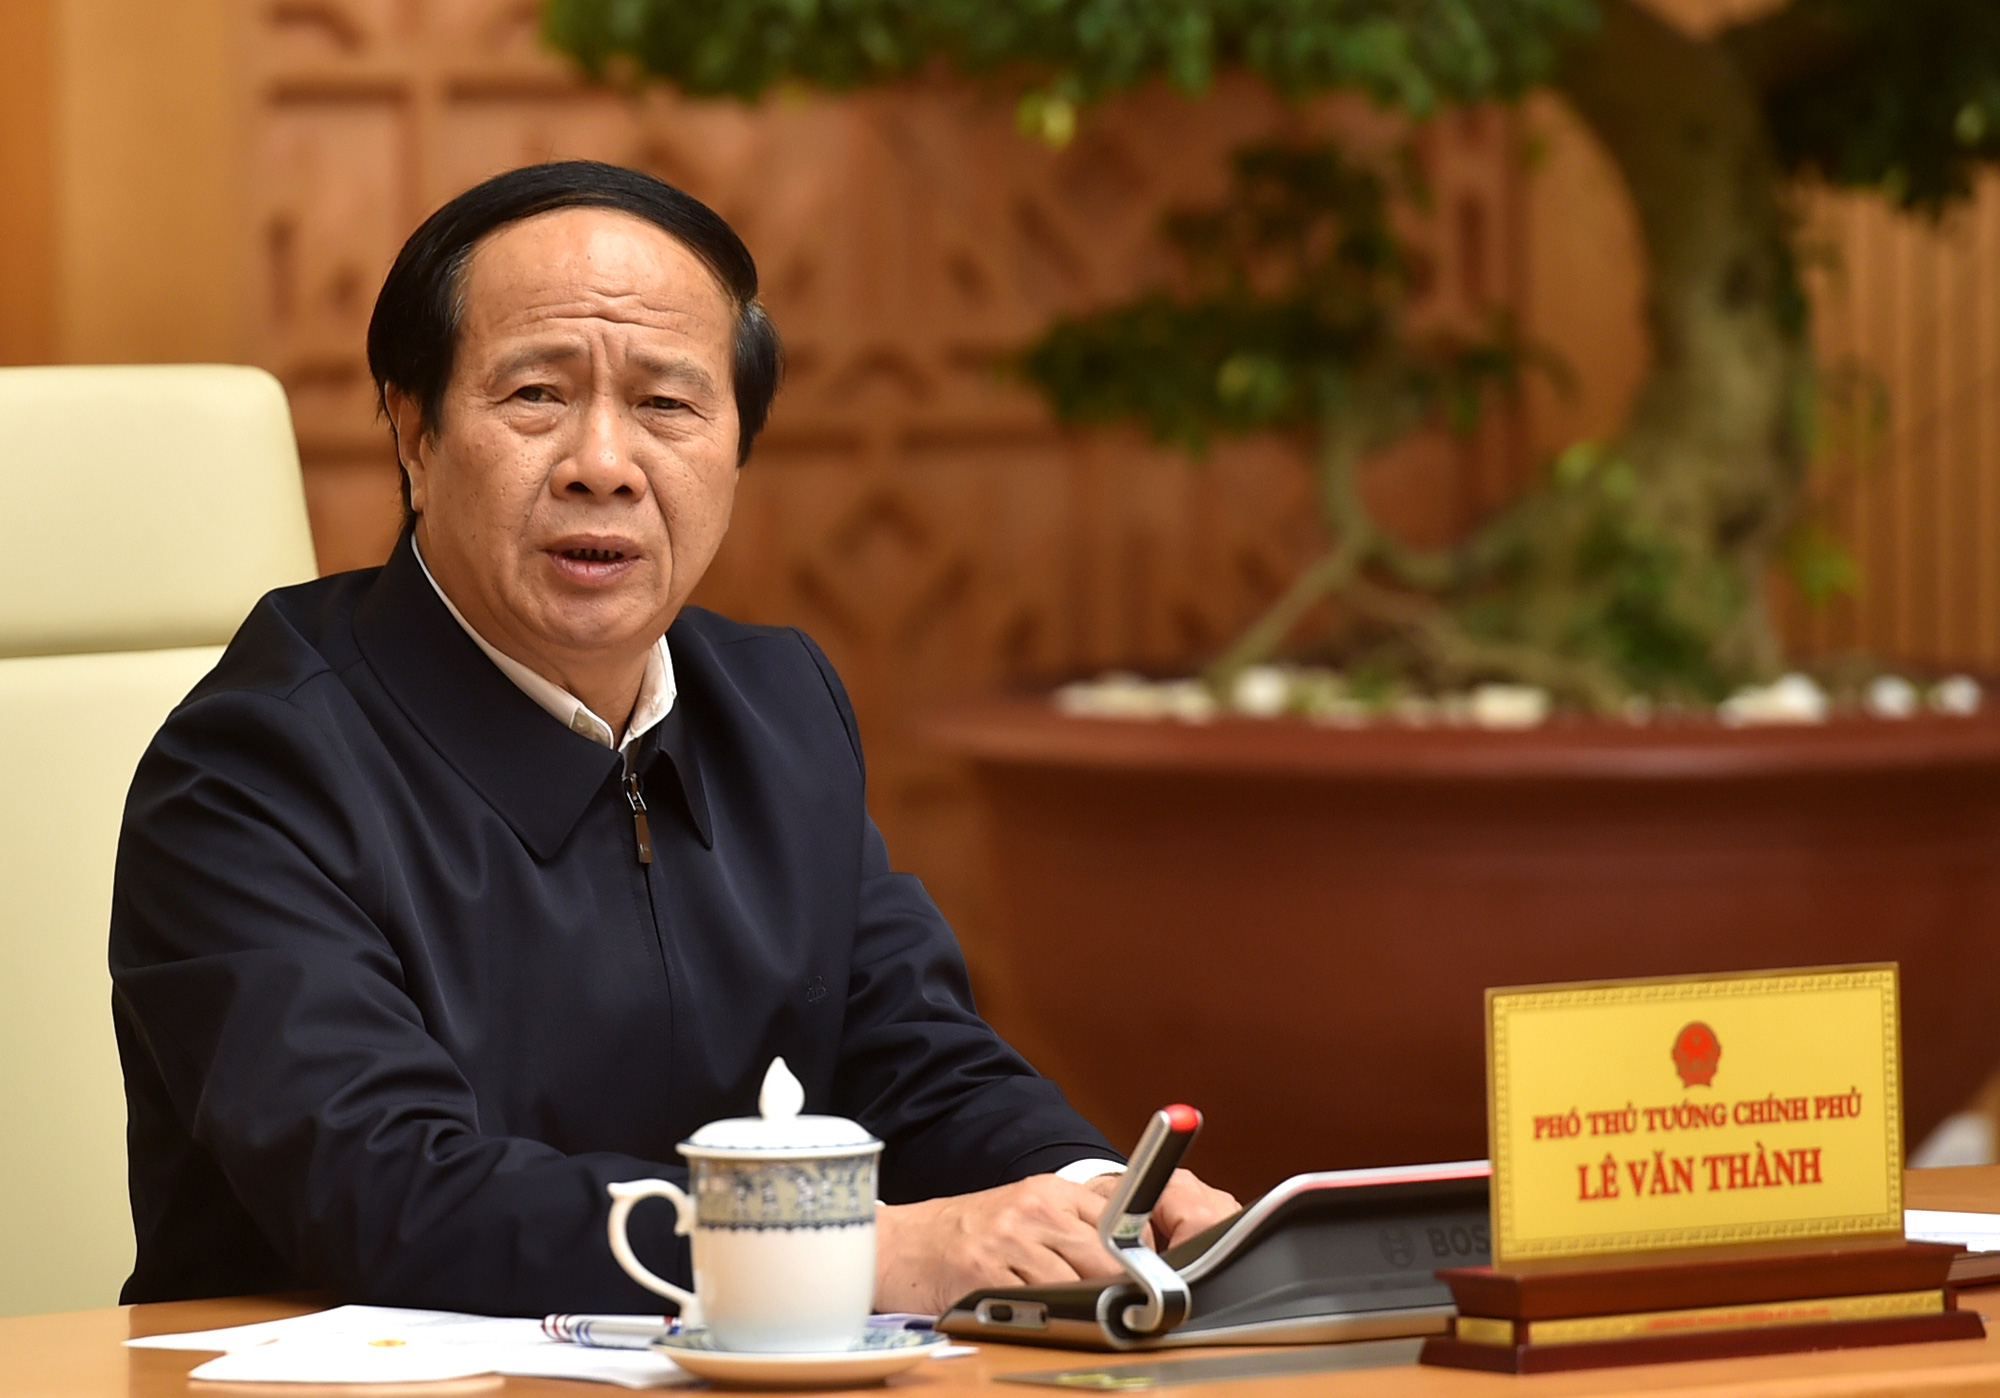 Phó Thủ tướng Lê Văn Thành nhấn mạnh khẩn trương huy động lực lượng tại chỗ, phối hợp với các cơ quan hữu quan của Trung Quốc để thiết lập mô hình vùng xanh chung của hai nước.